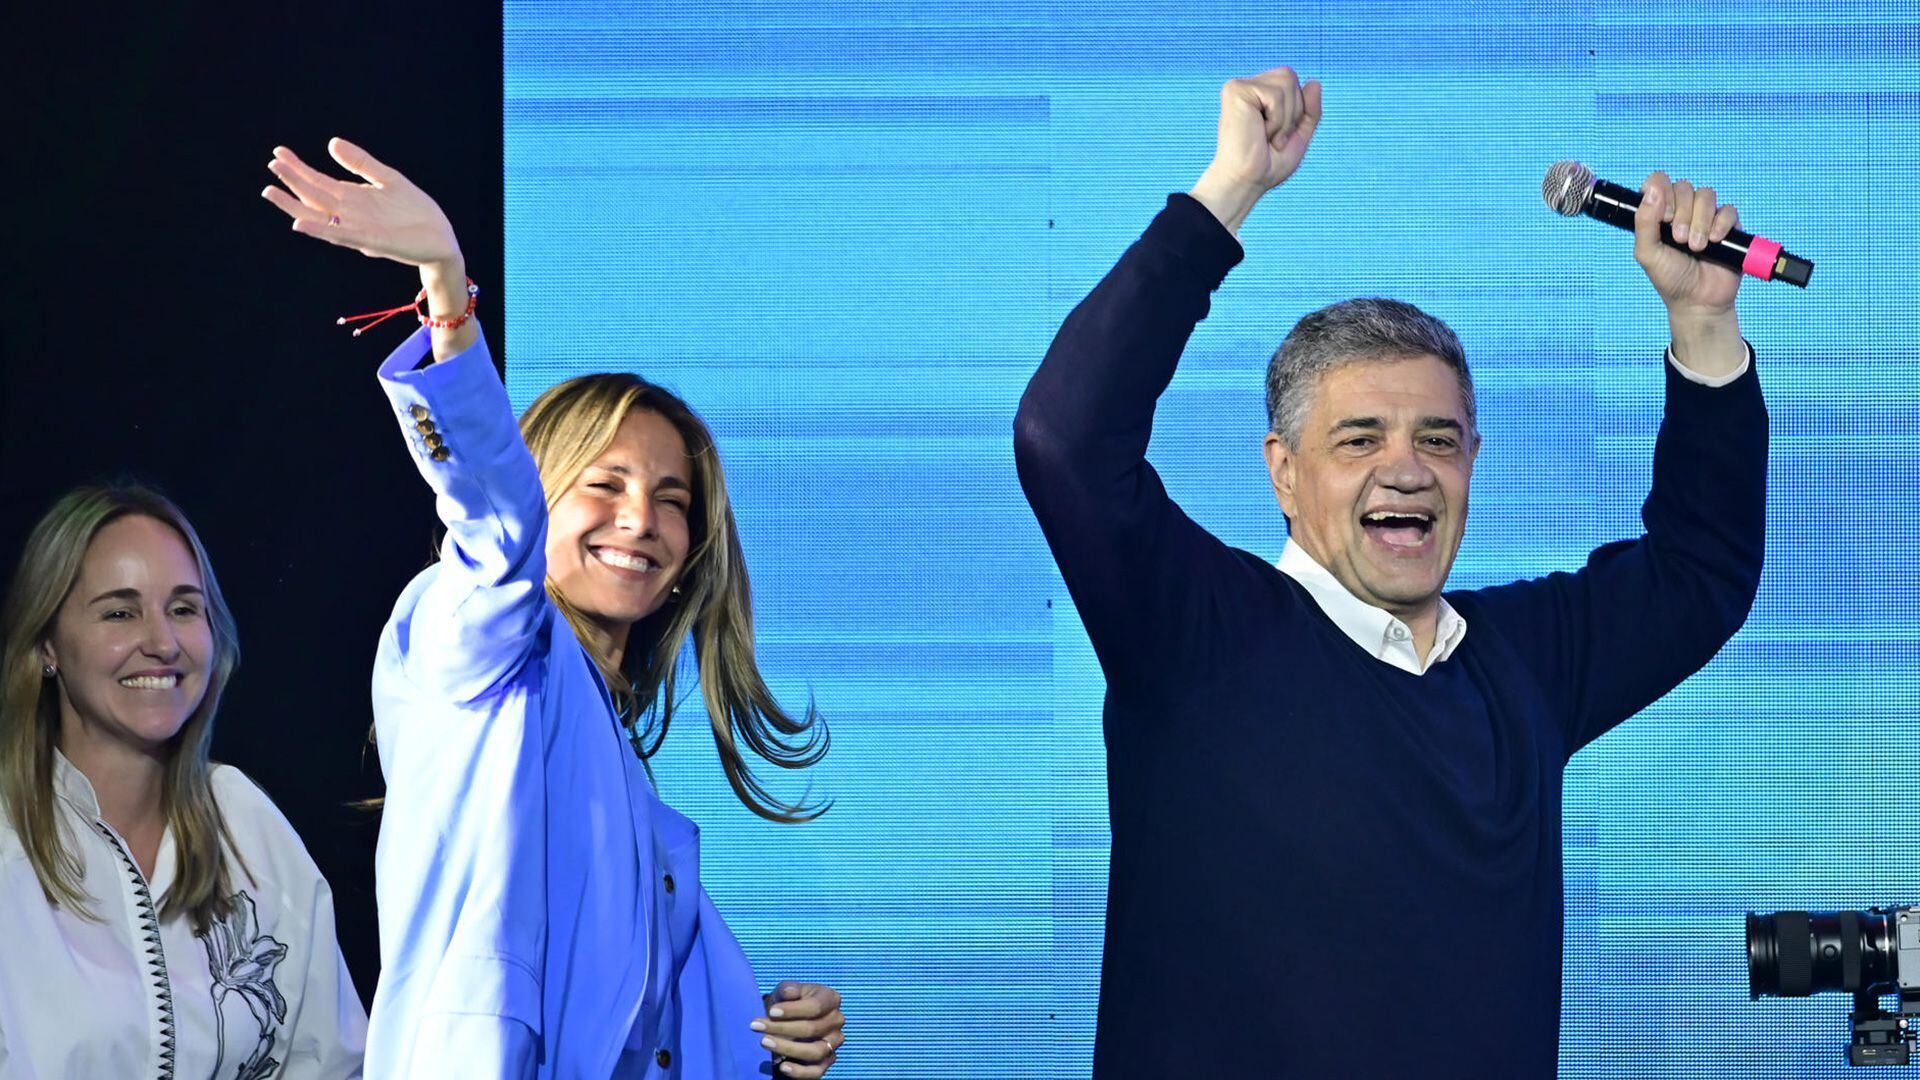 El candidato oficialista Jorge Macri, su esposa María Belén Ludueña y su compañera de fórmula, Clara Muzzio, tras los resultados de las elecciones en CABA. (EFE/ Matias Martin Campaya)